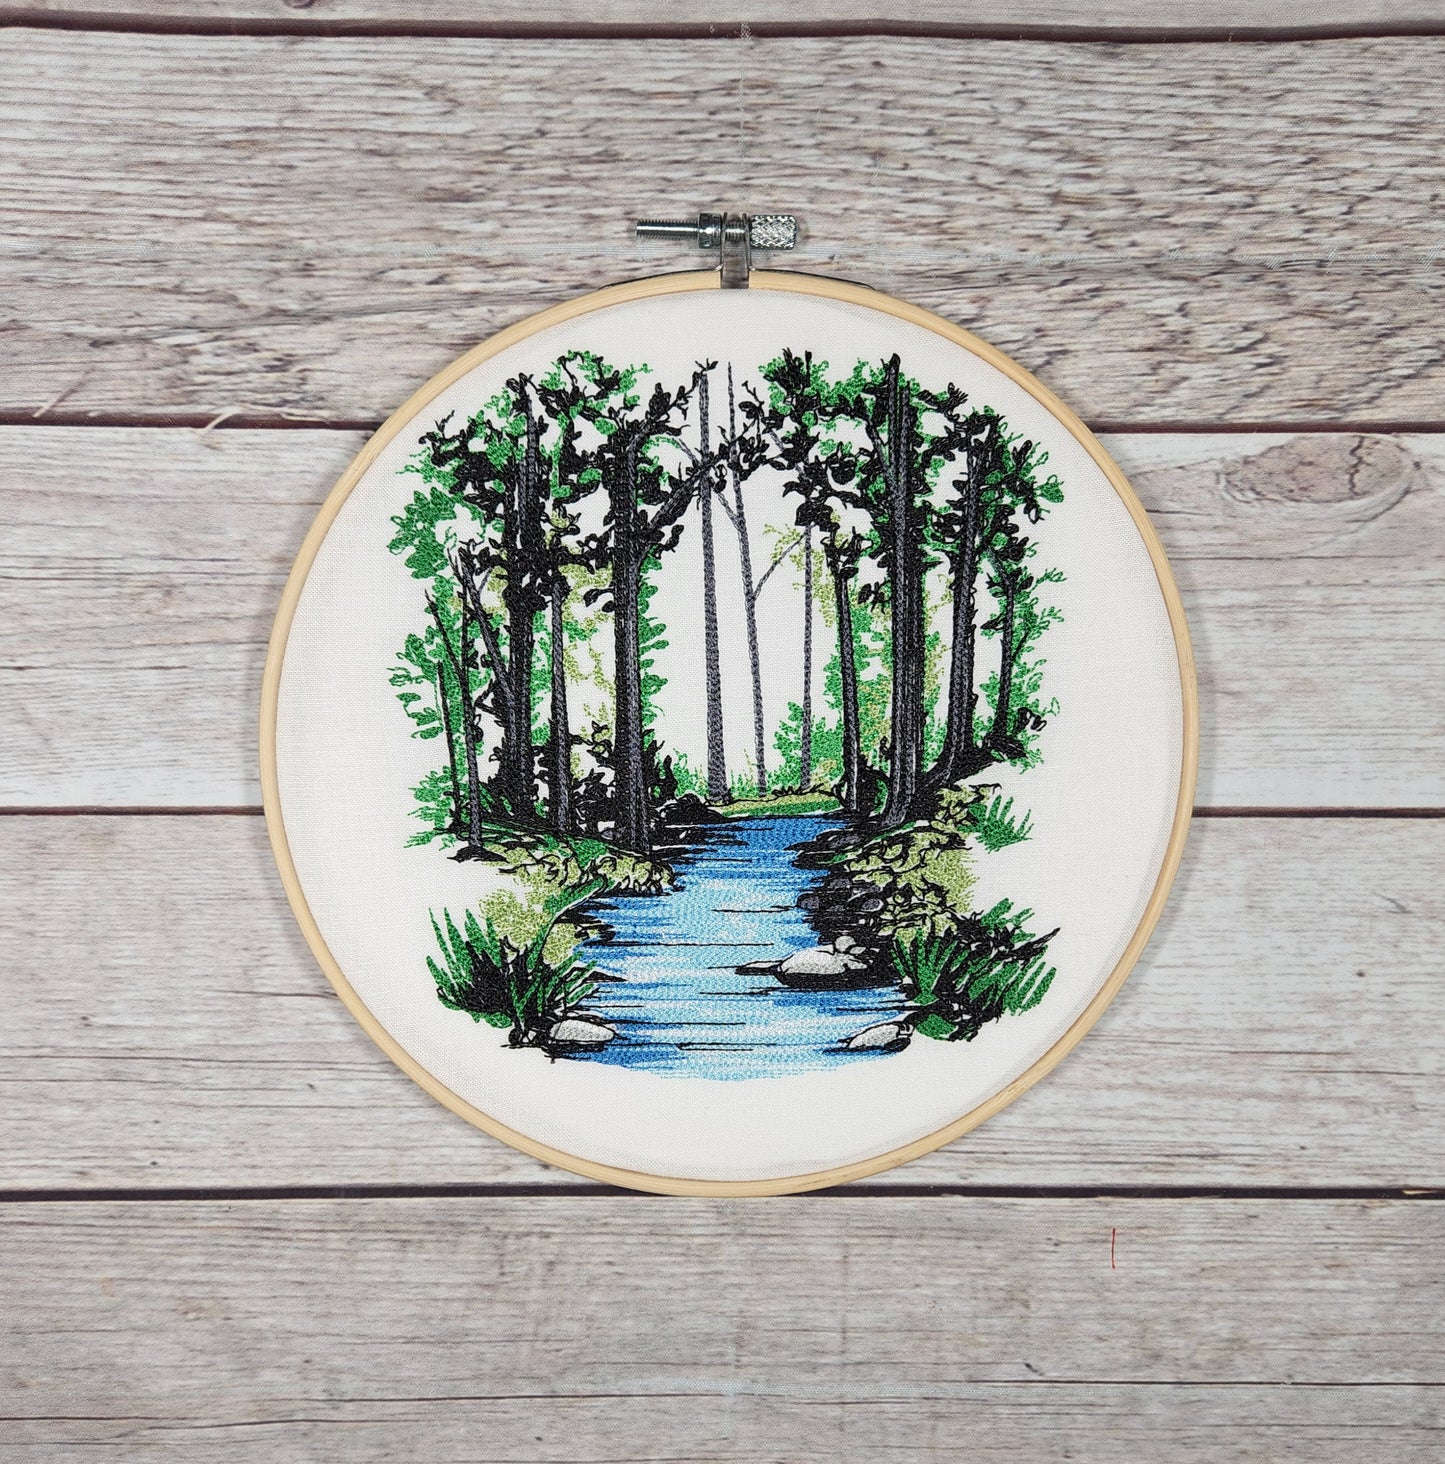 8 Wood Embroidery Hoop